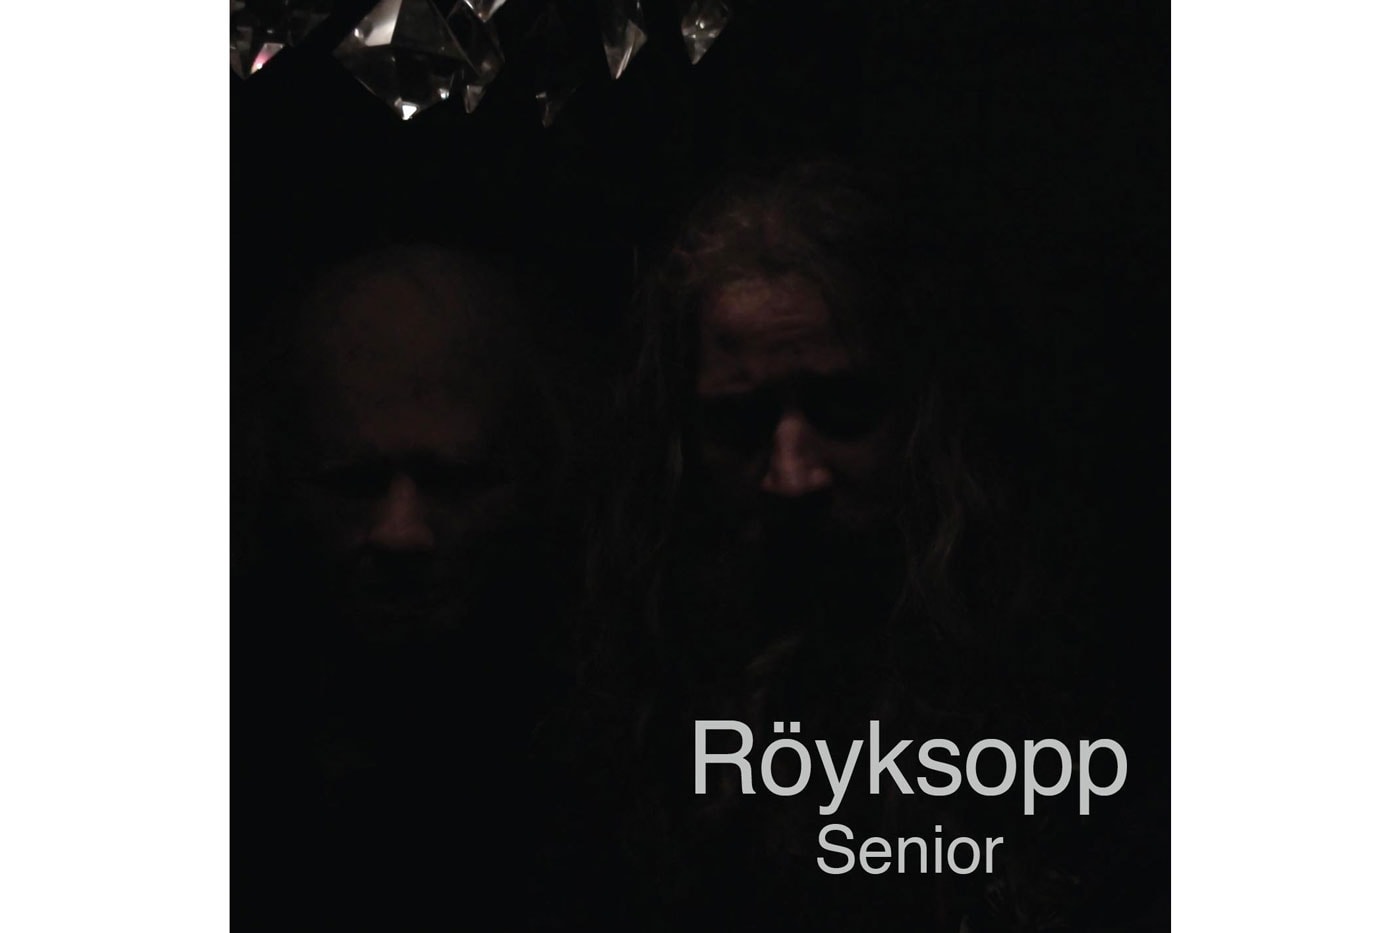 Röyksopp - Senior